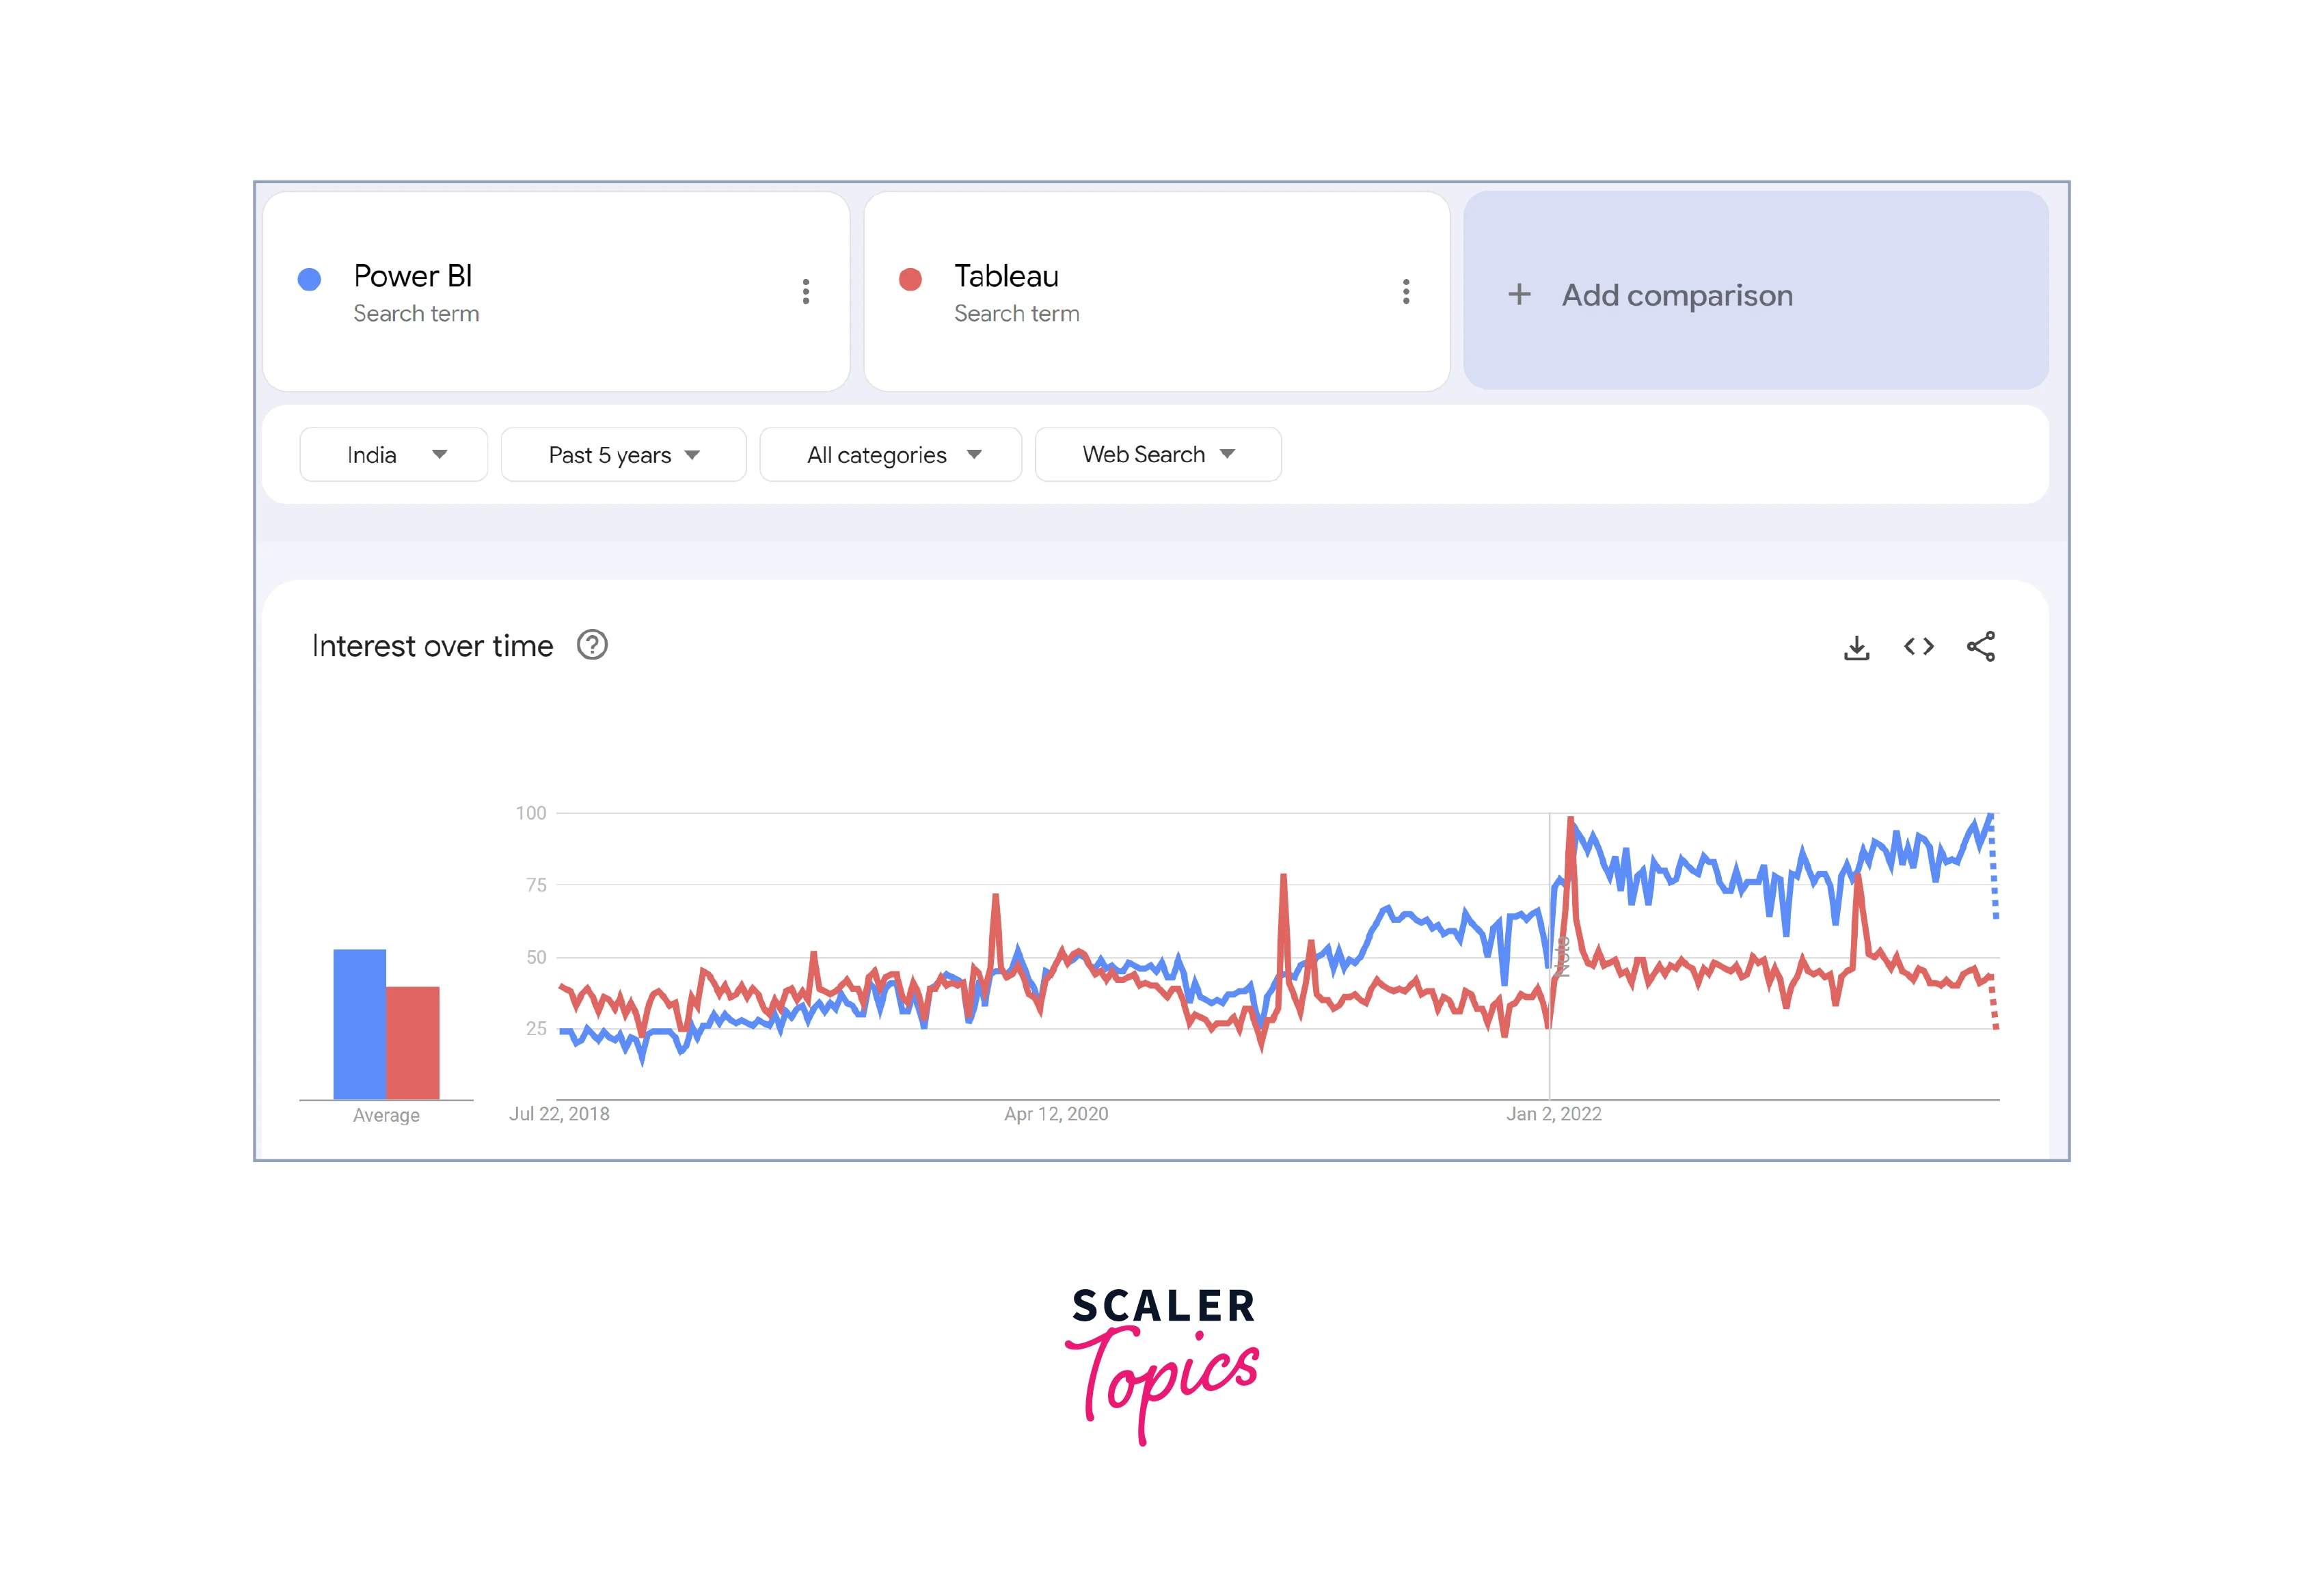 google trends data for power bi vs tableau